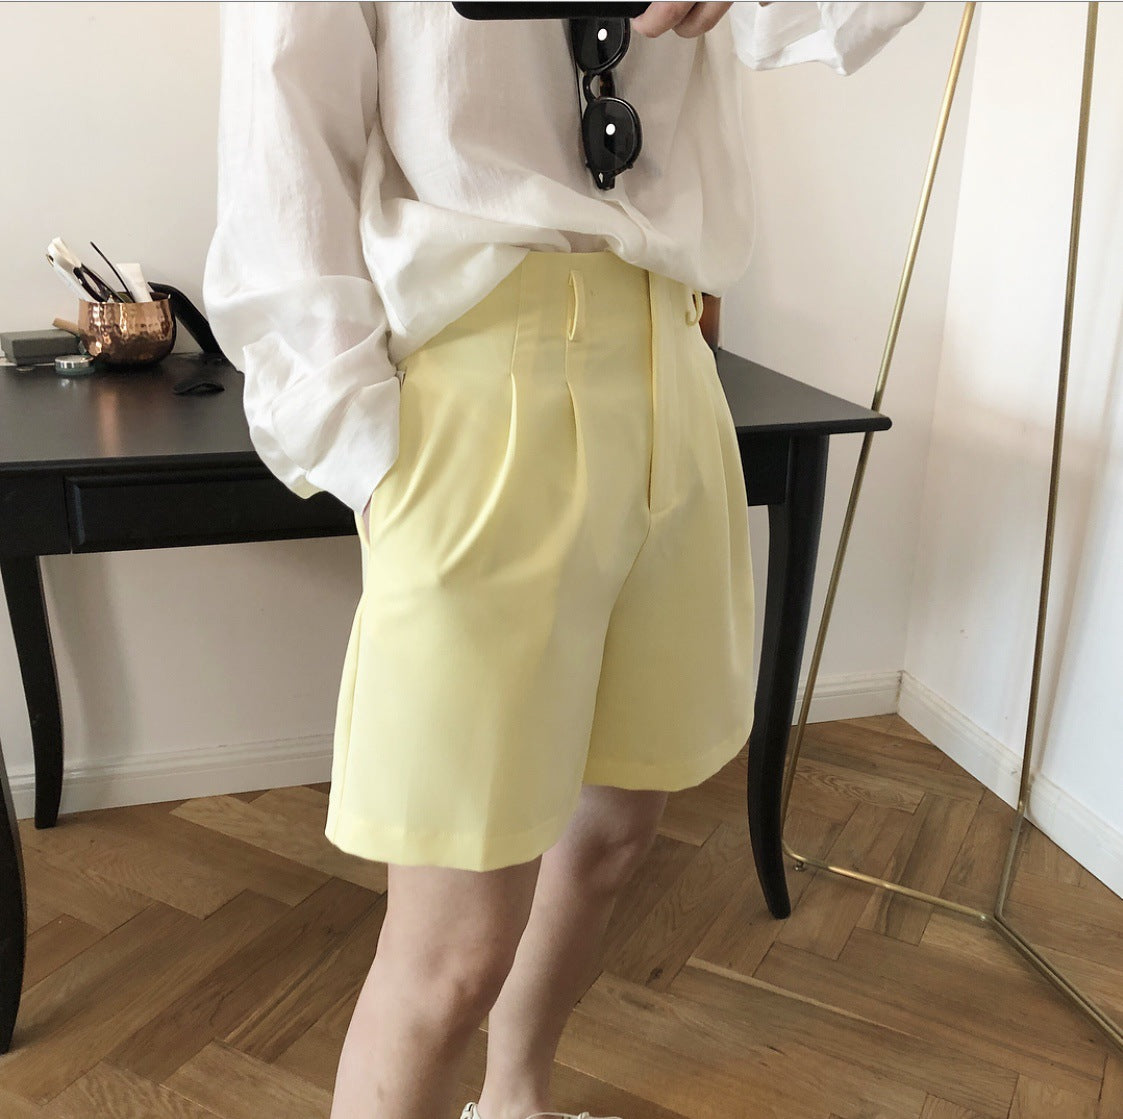 Louu verano nueva Corea Dongda puerta calidad Simple casual alta cintura traje pantalones cortos sueltos moda Mujer